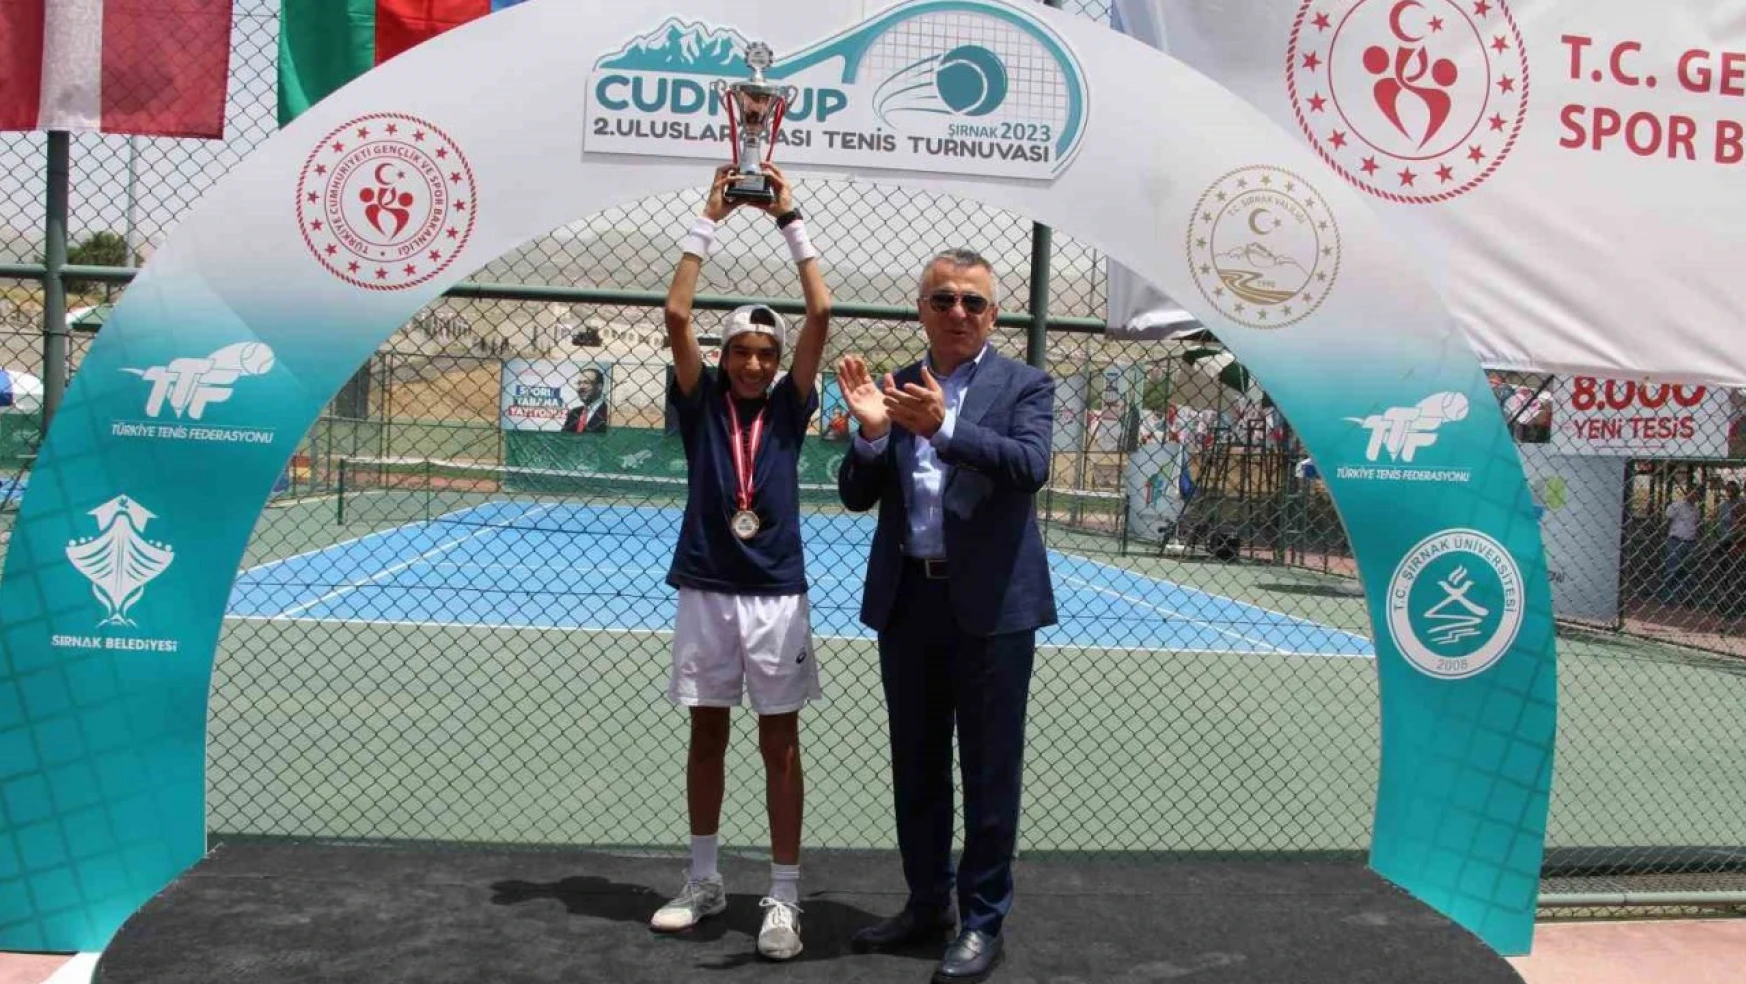 Şırnak'ta düzenlenen 2. Uluslararası Cudi Cup Tenis Turnuvası sona erdi